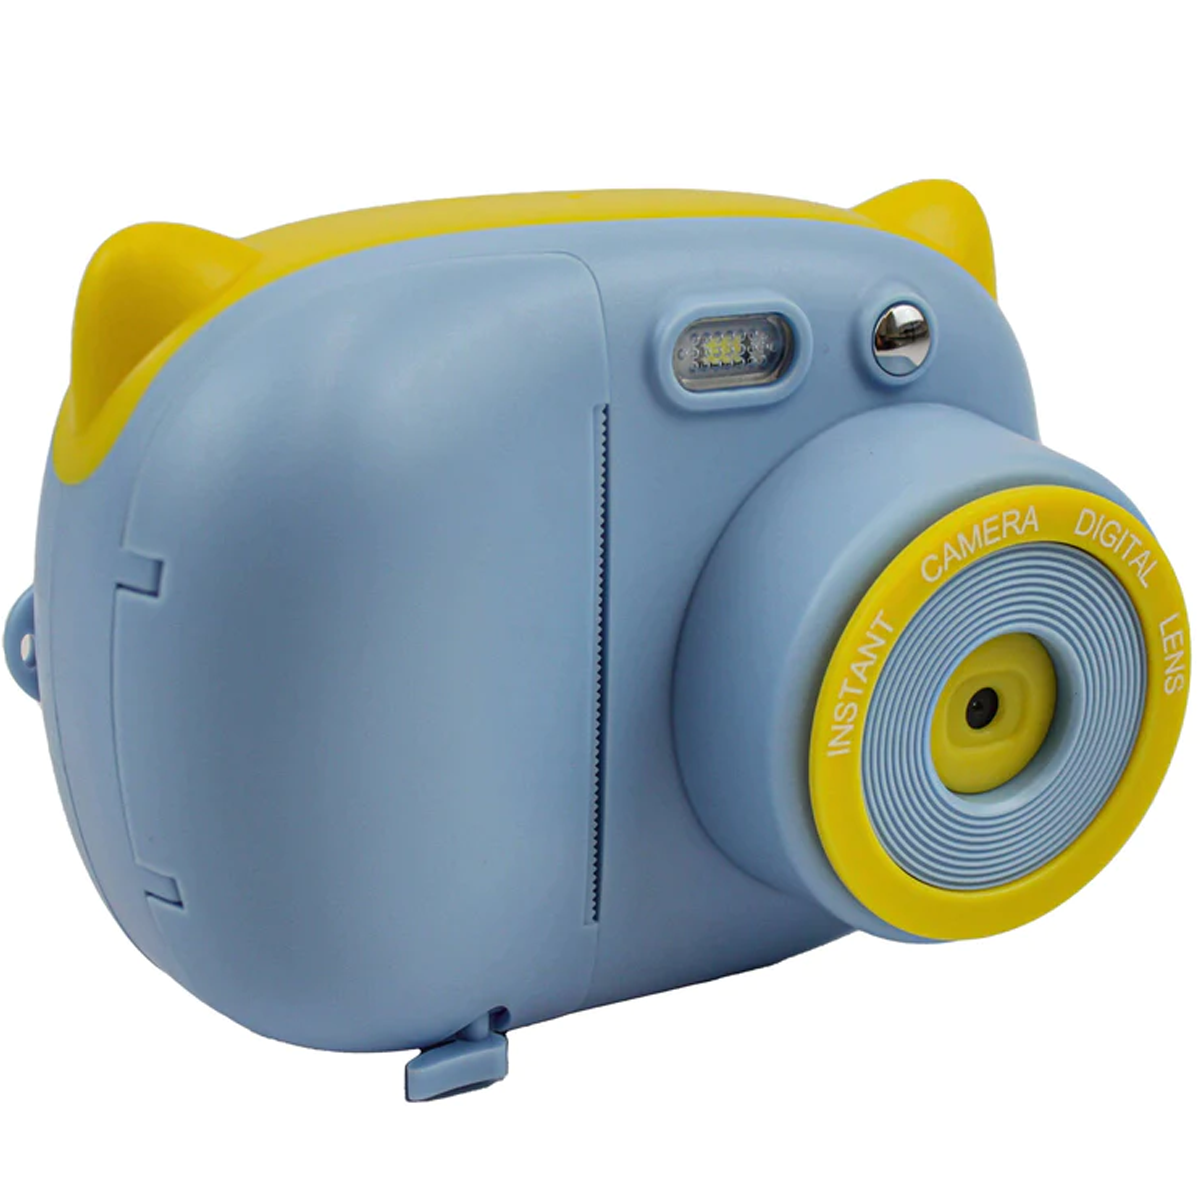 Foto SYNTEK Polaroid druckbar Kinder und Spaß Blau Kamera drucken Student Portable schwarz Sofortbildkamera,